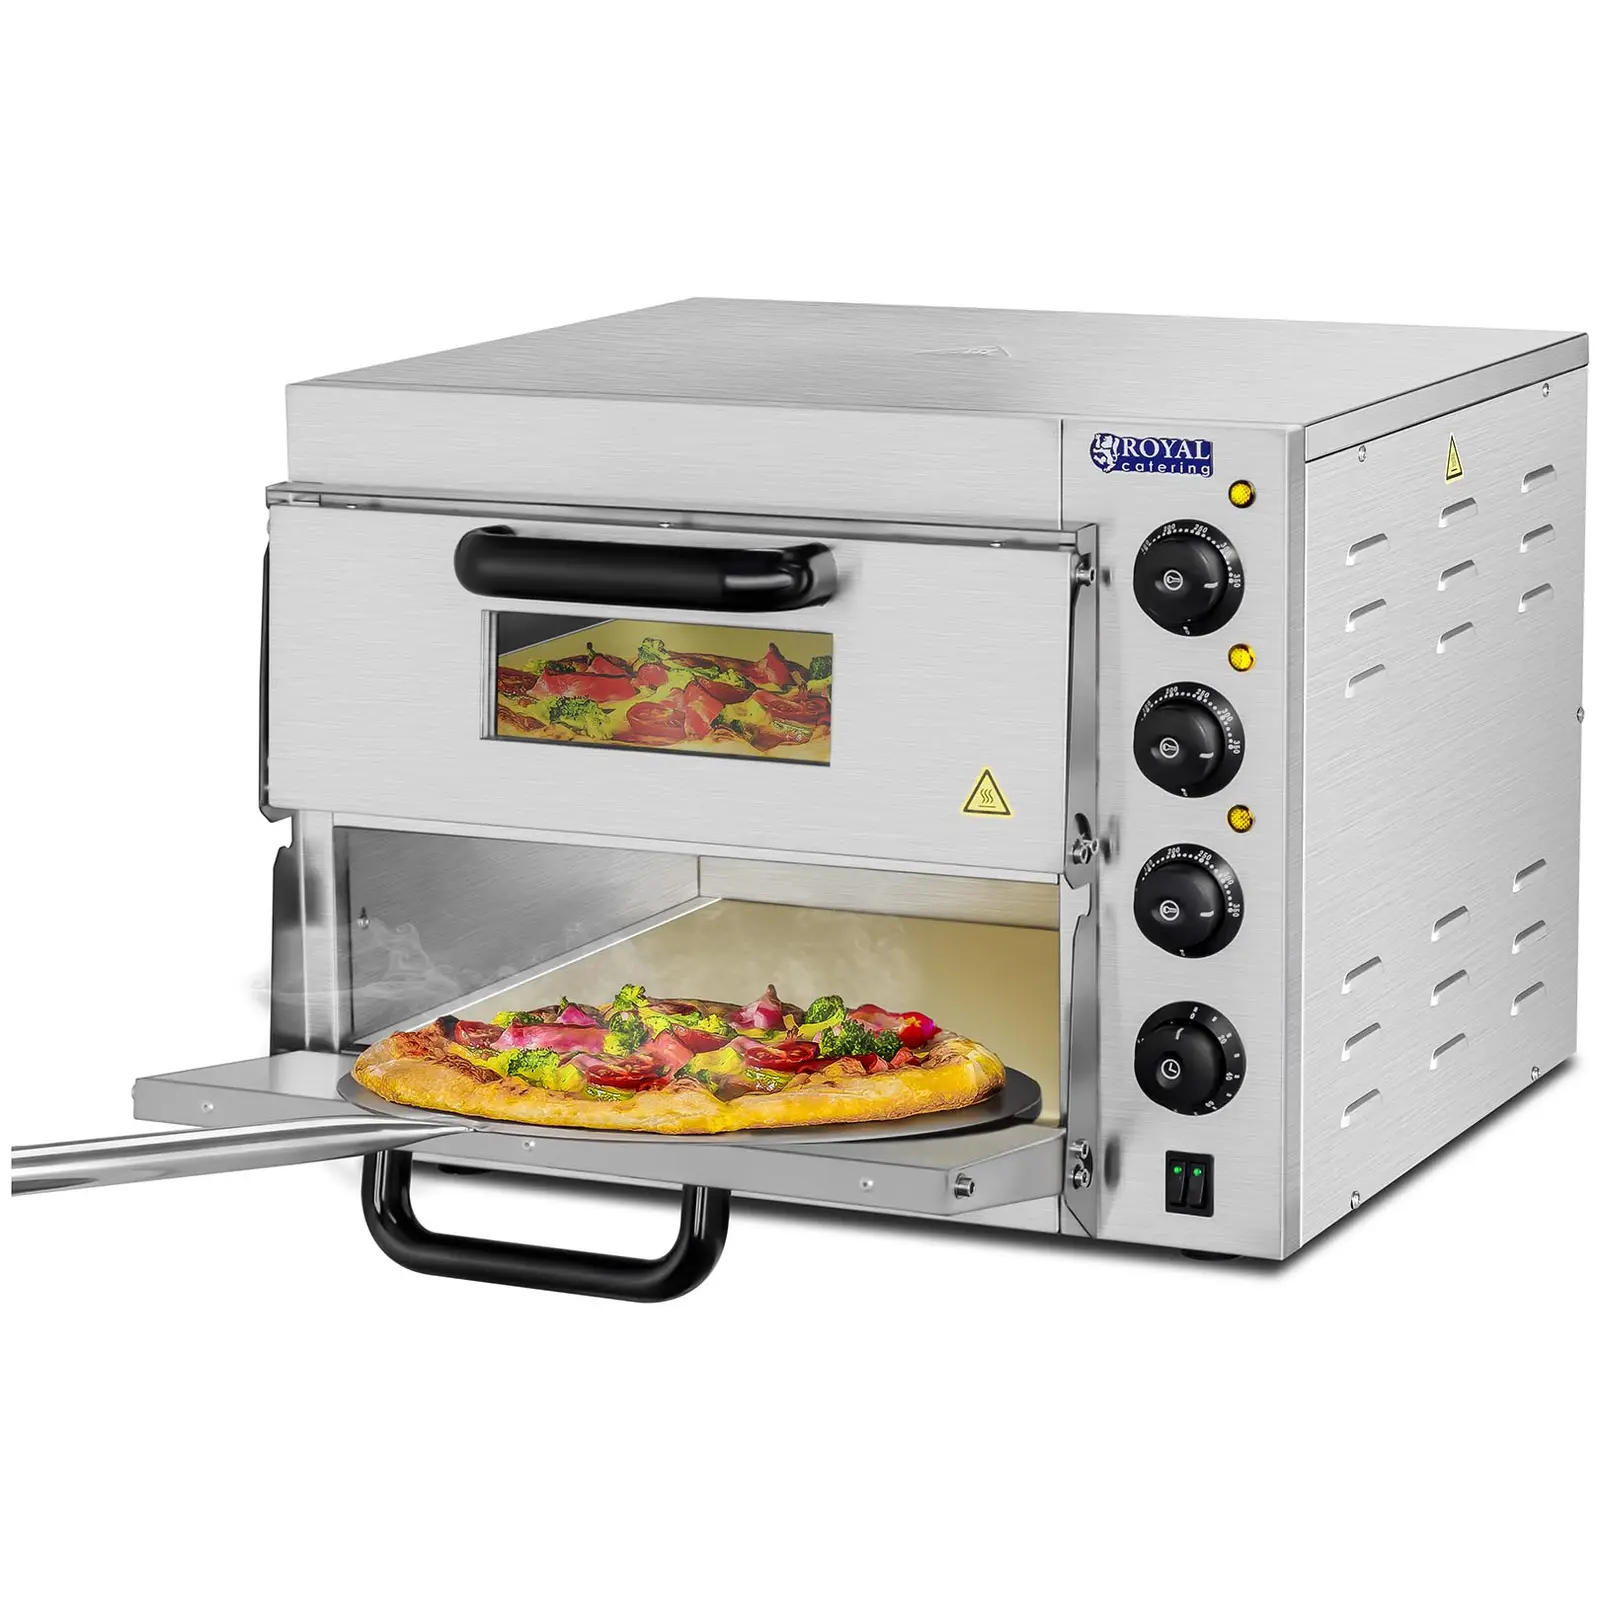 Pizza oven - 2 kamers - Chamotte bodem